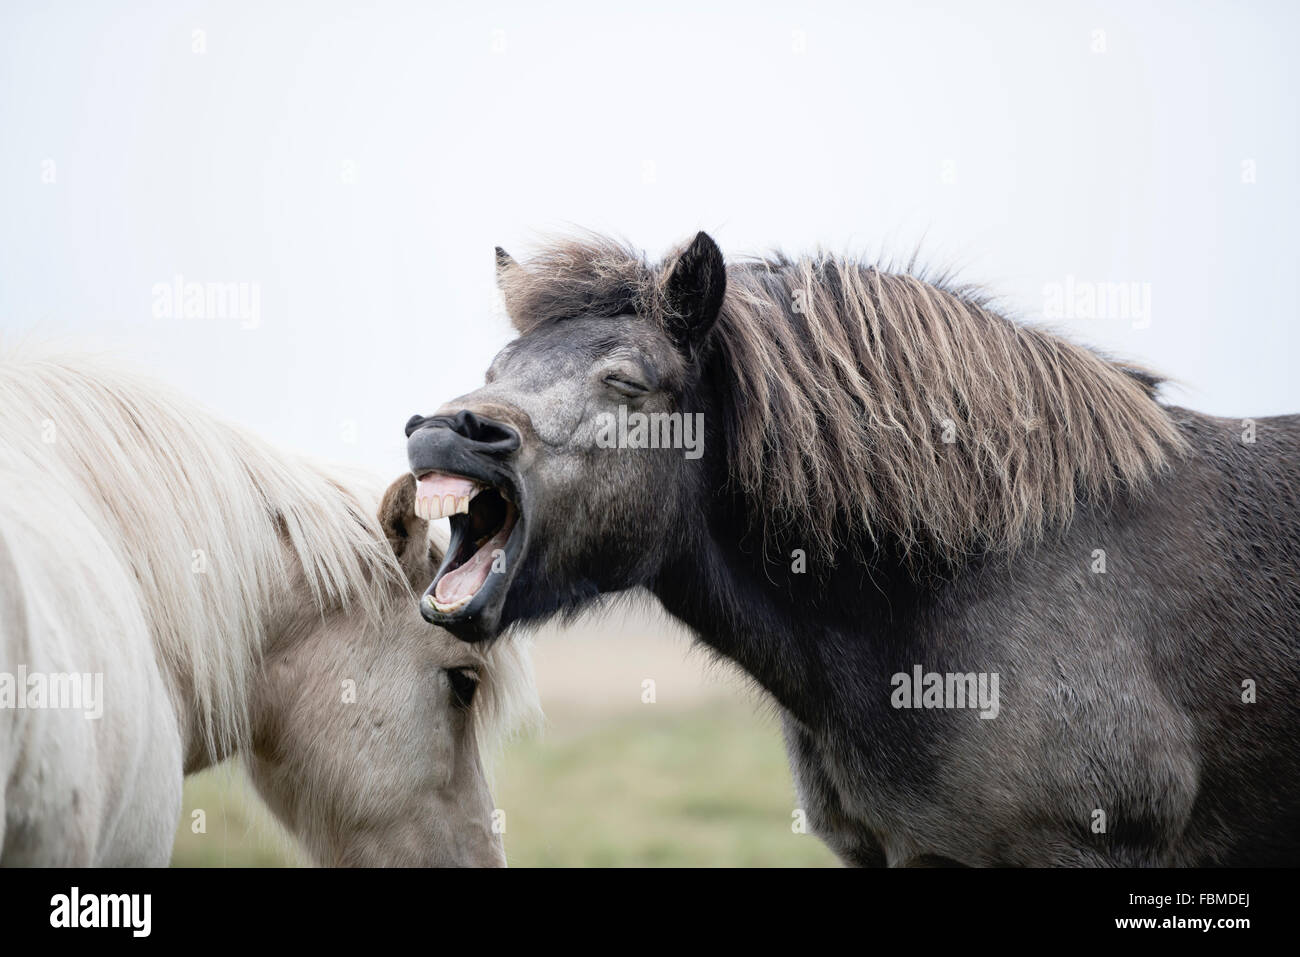 Braying Icelandic Horses, Iceland Stock Photo